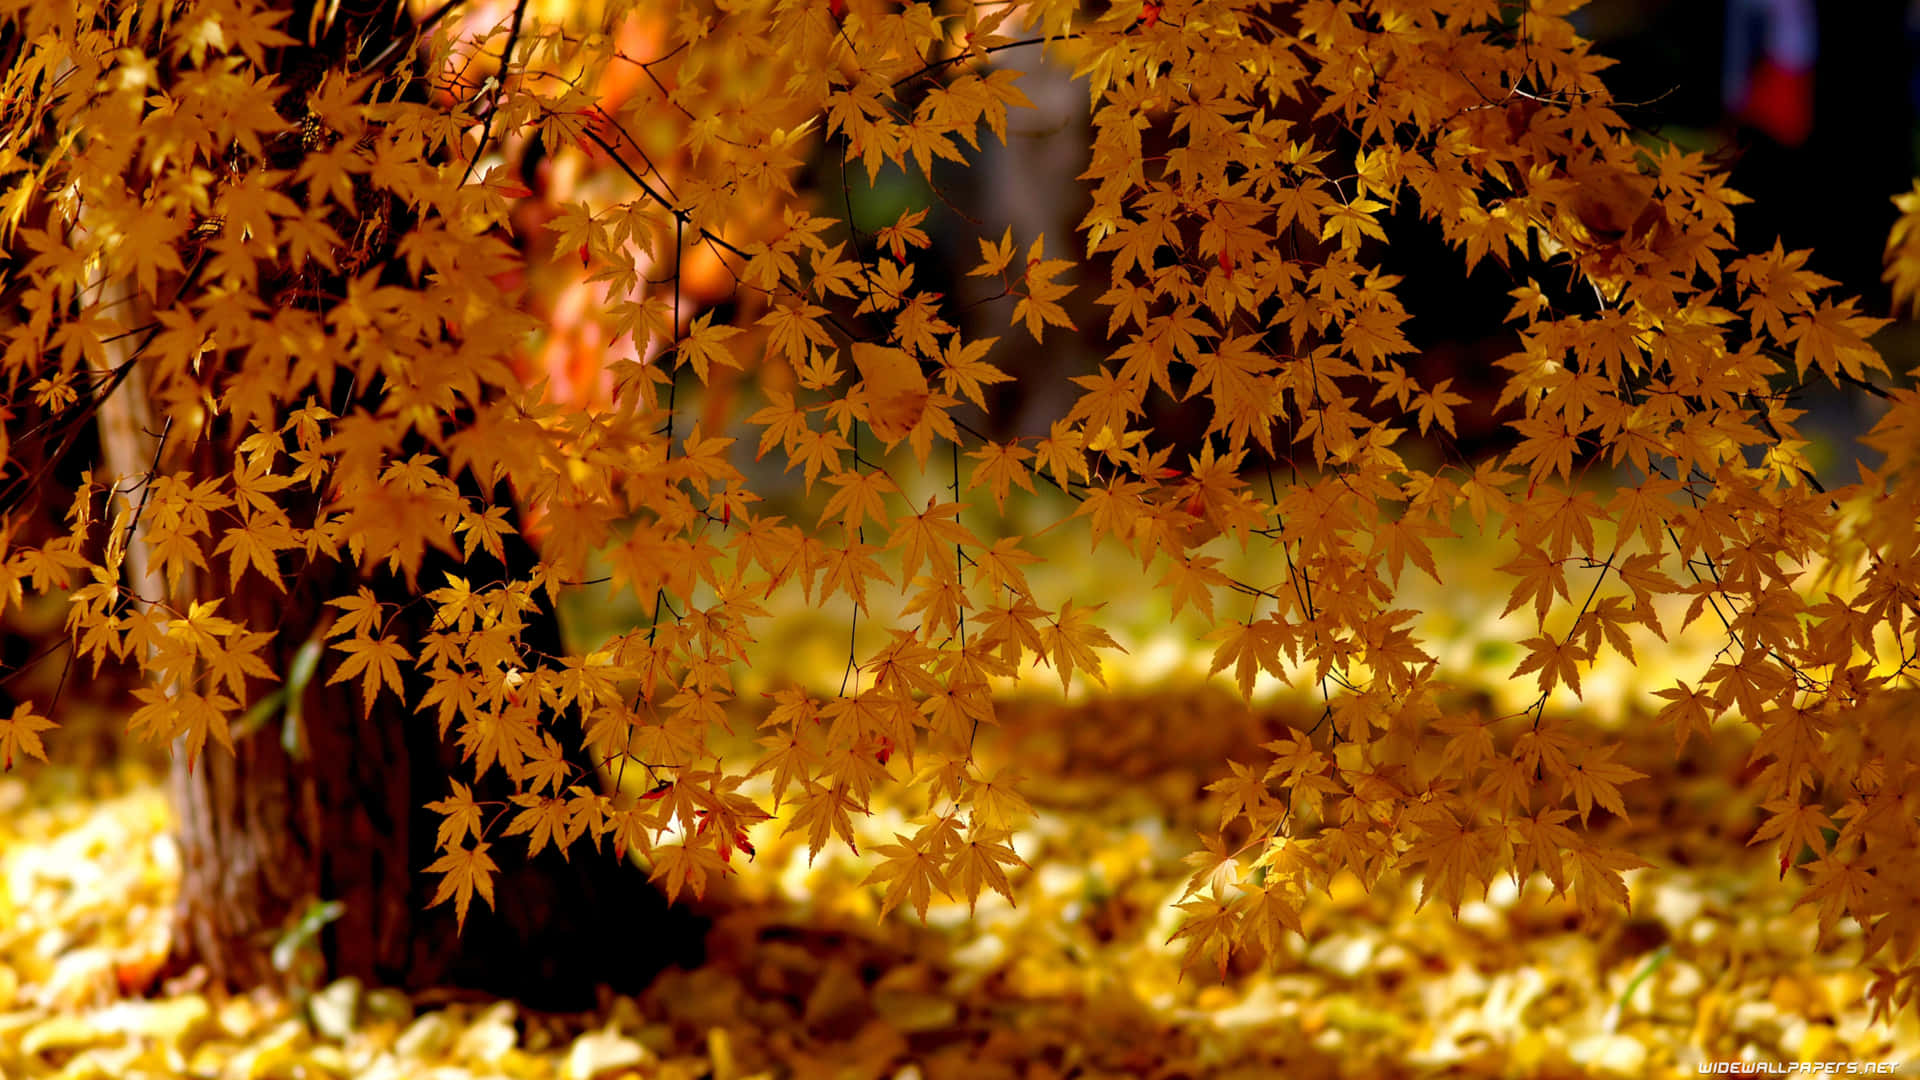 A scenic autumn landscape in 4k resolution Wallpaper